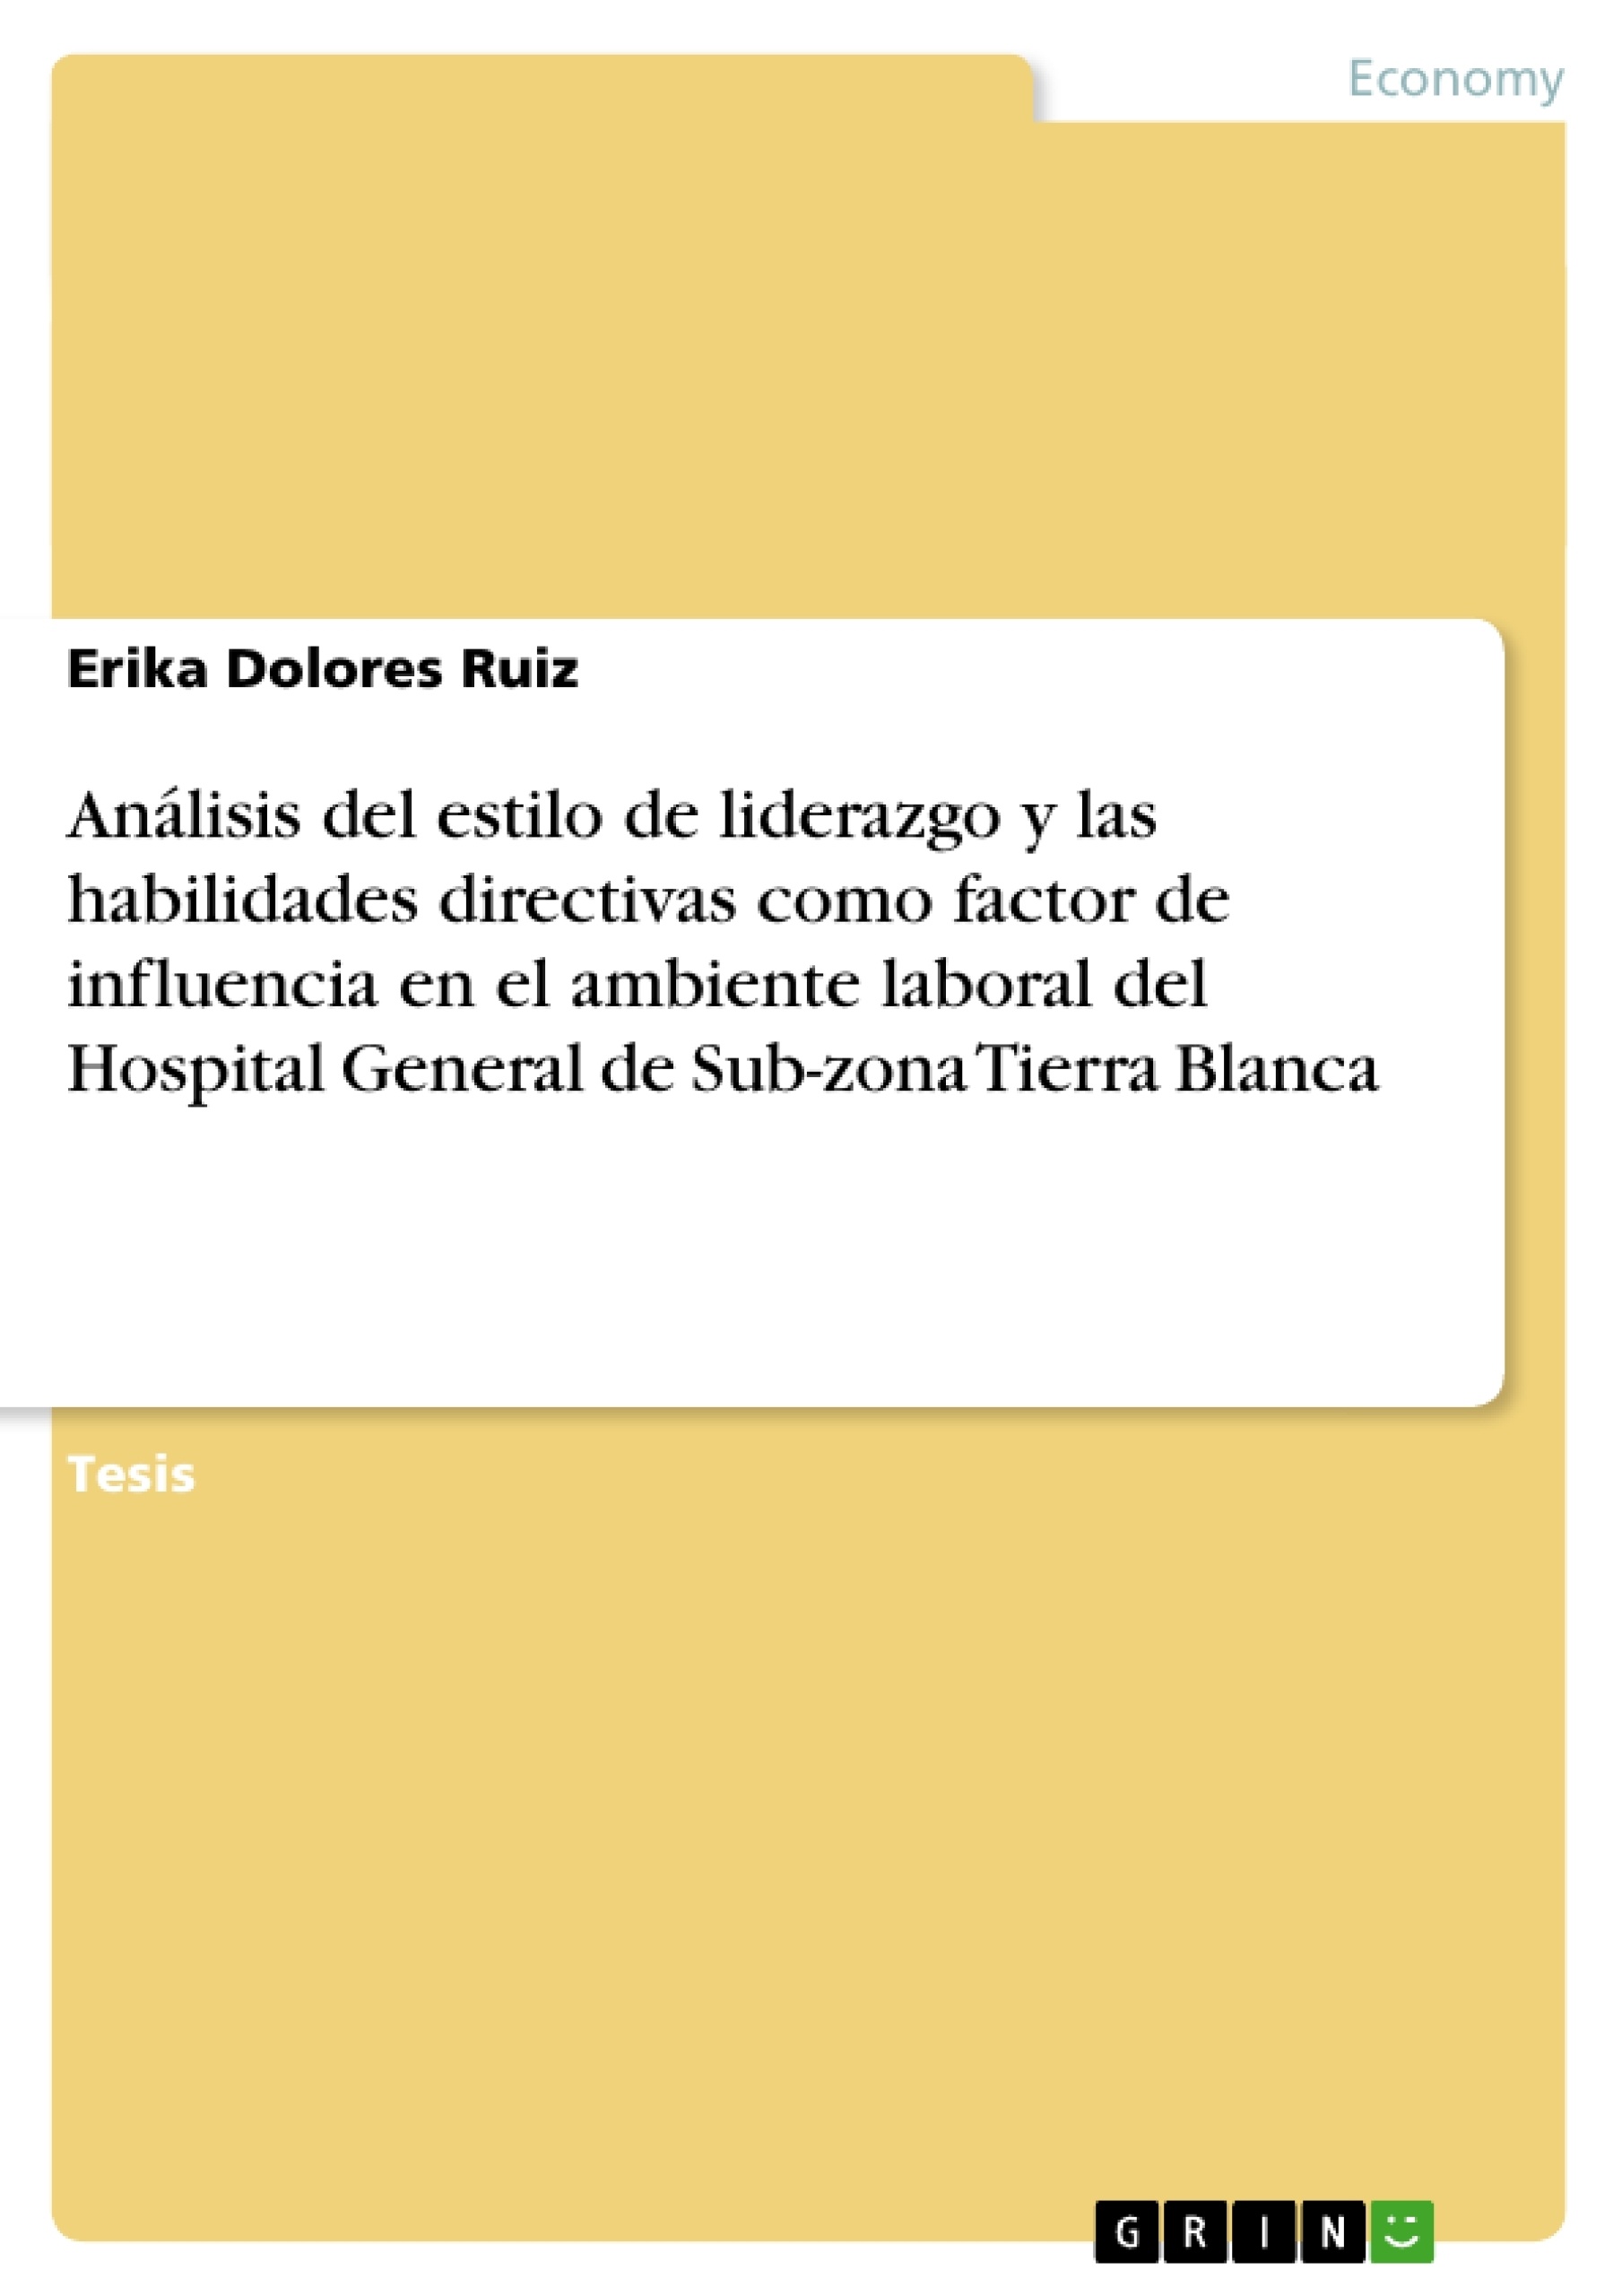 Título: Análisis del estilo de liderazgo y las habilidades directivas como factor de influencia en el ambiente laboral del Hospital General de Sub-zona Tierra Blanca